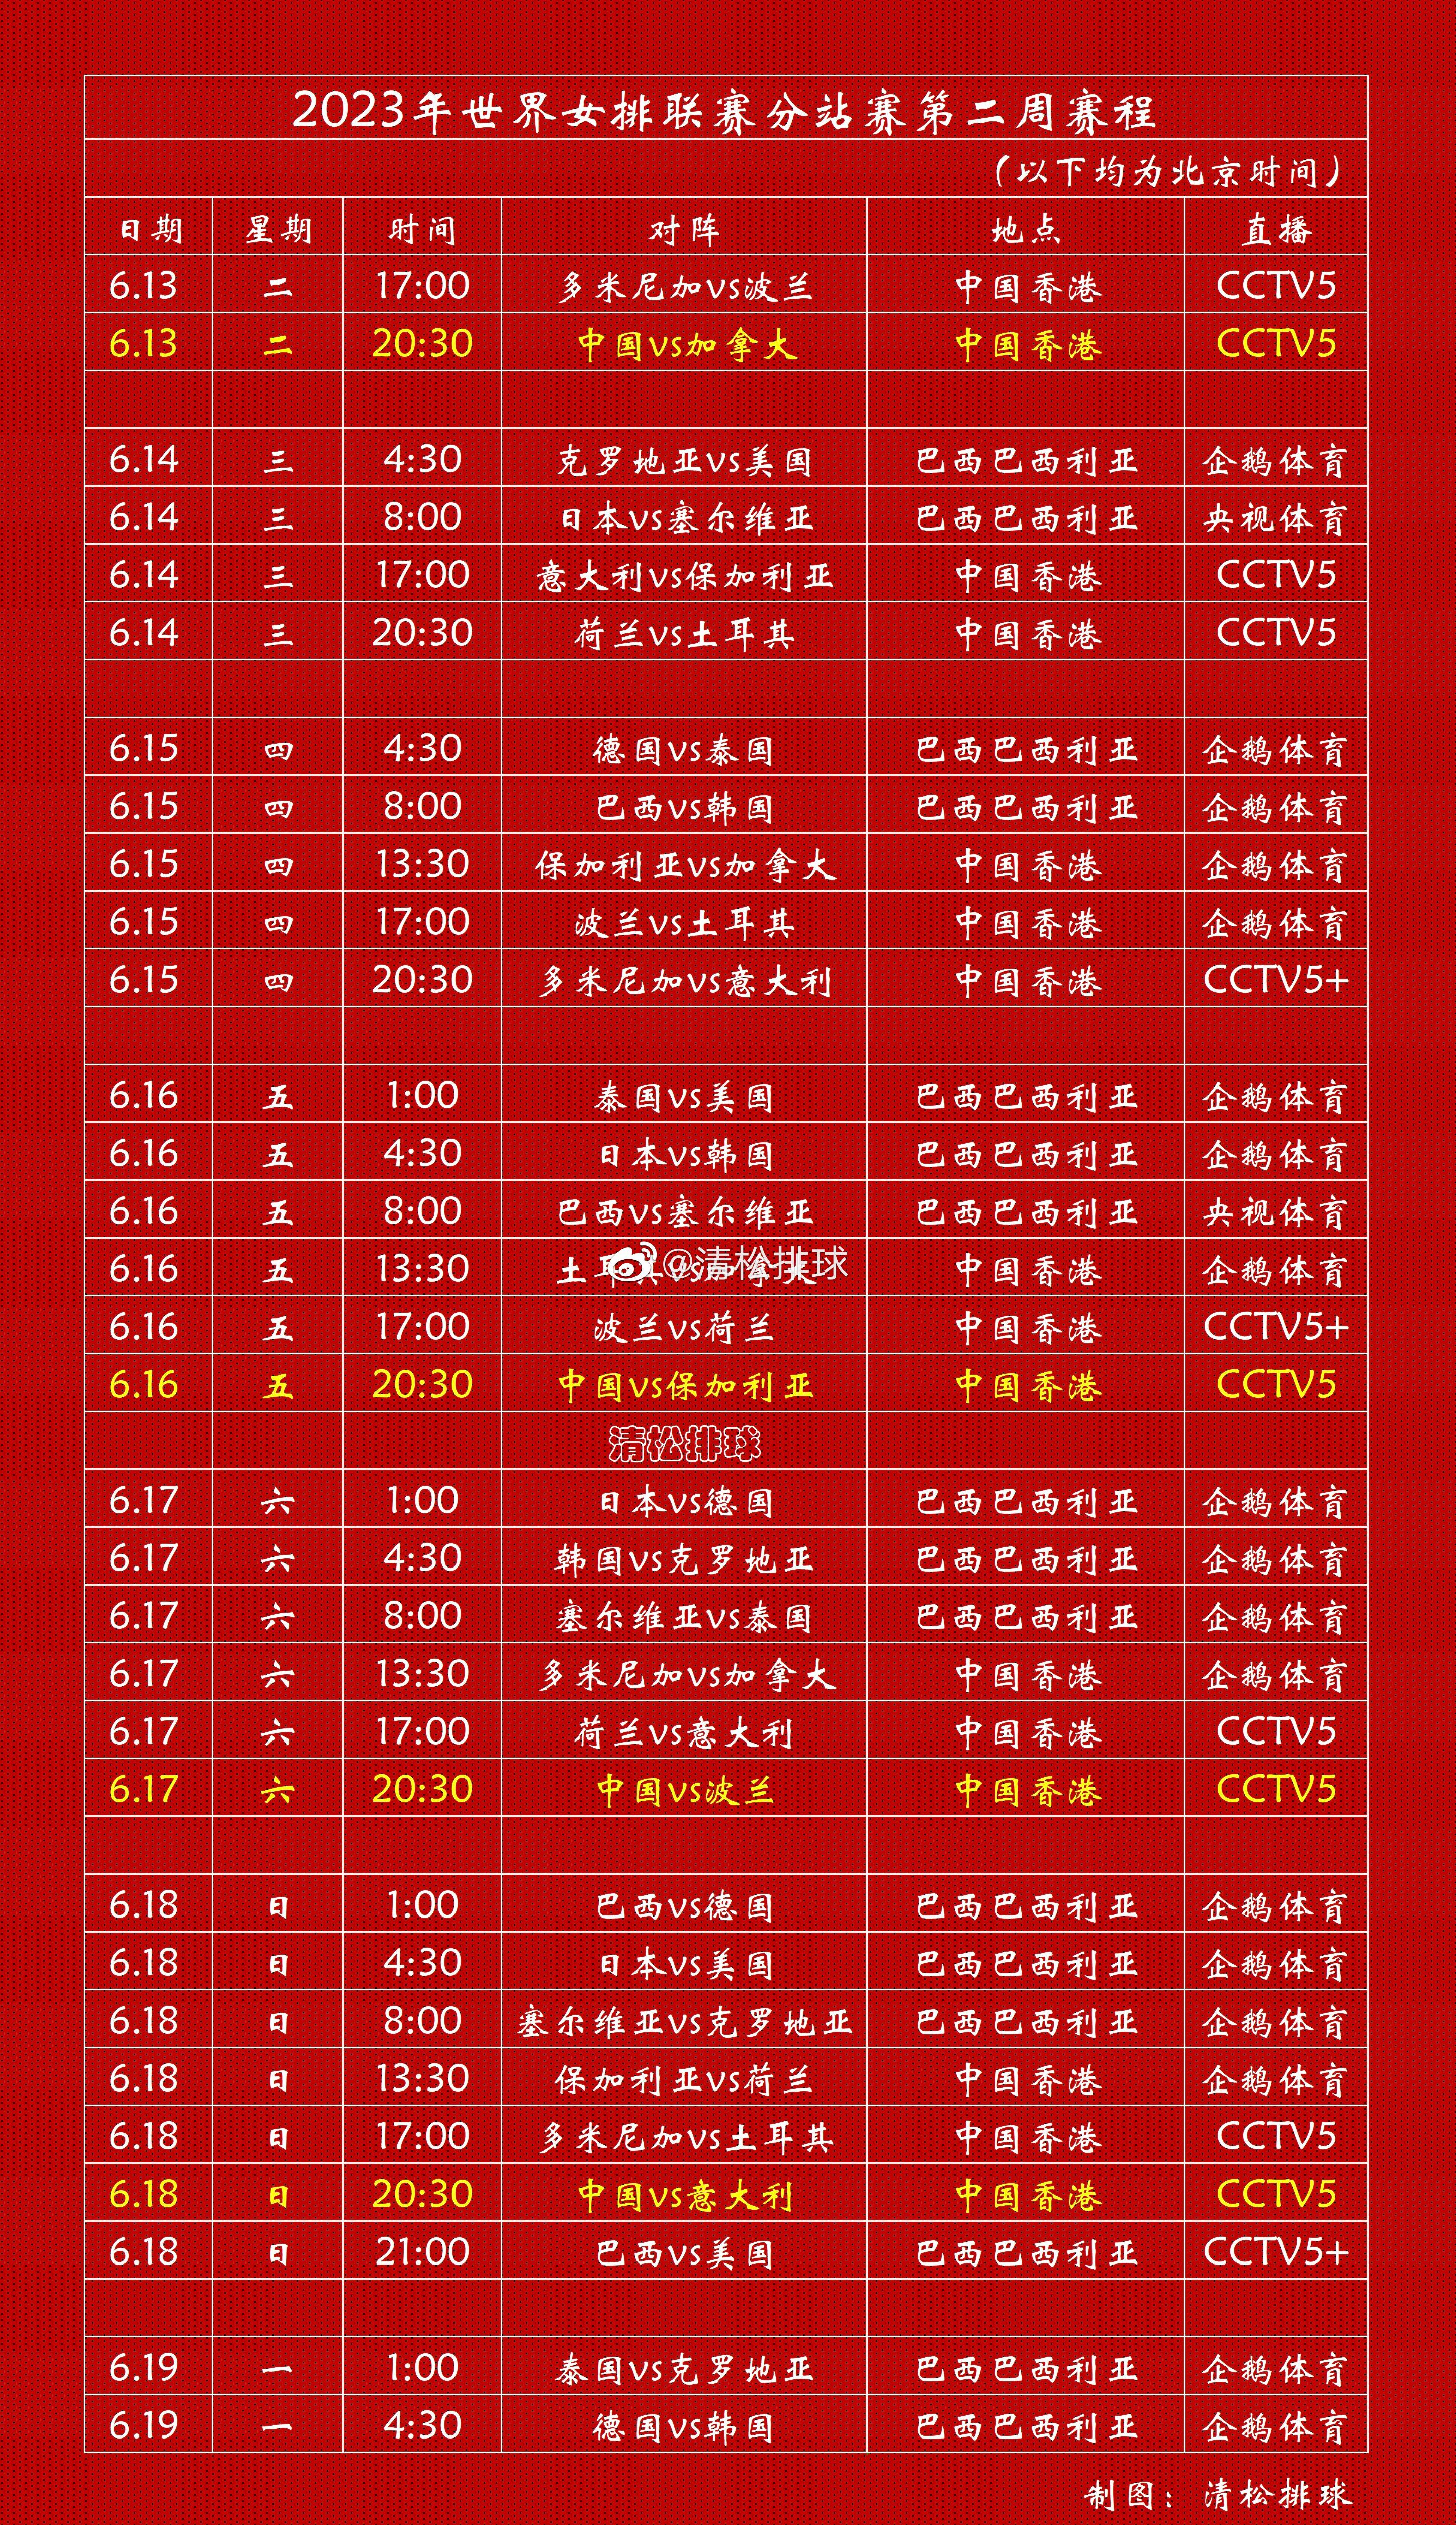 【赛程表】2023年世界女排联赛第二周中国香港站、巴西巴西利亚站完整赛程中国女排(1)